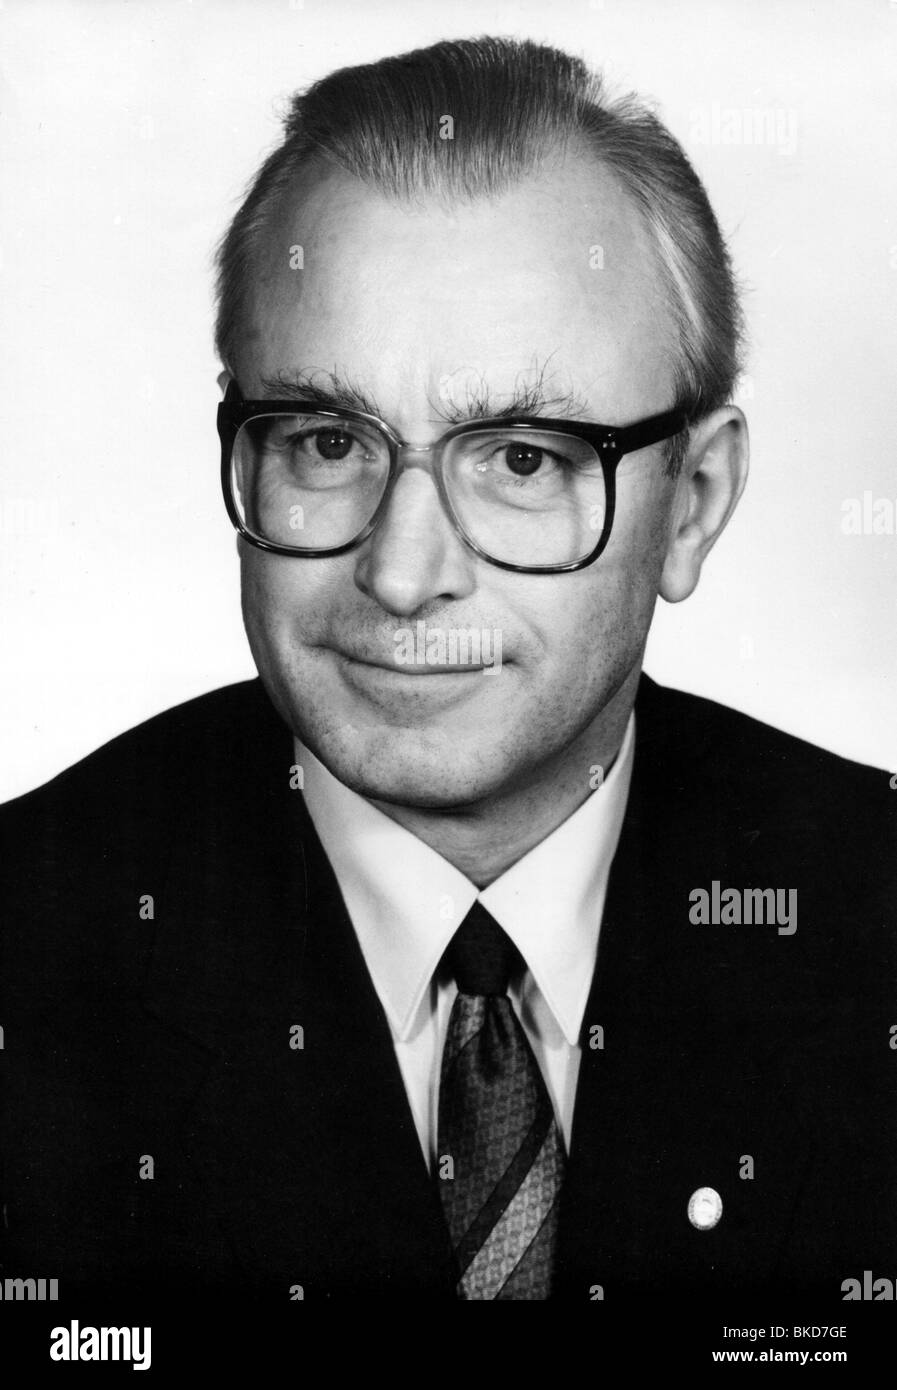 Schwanitz, Wolfgang, * 26.6.1960, deutscher Politiker (SED), Chef des ostdeutschen Präsidiums für Nationale Sicherheit 1989 - 1990, Porträt, 1989, Stockfoto